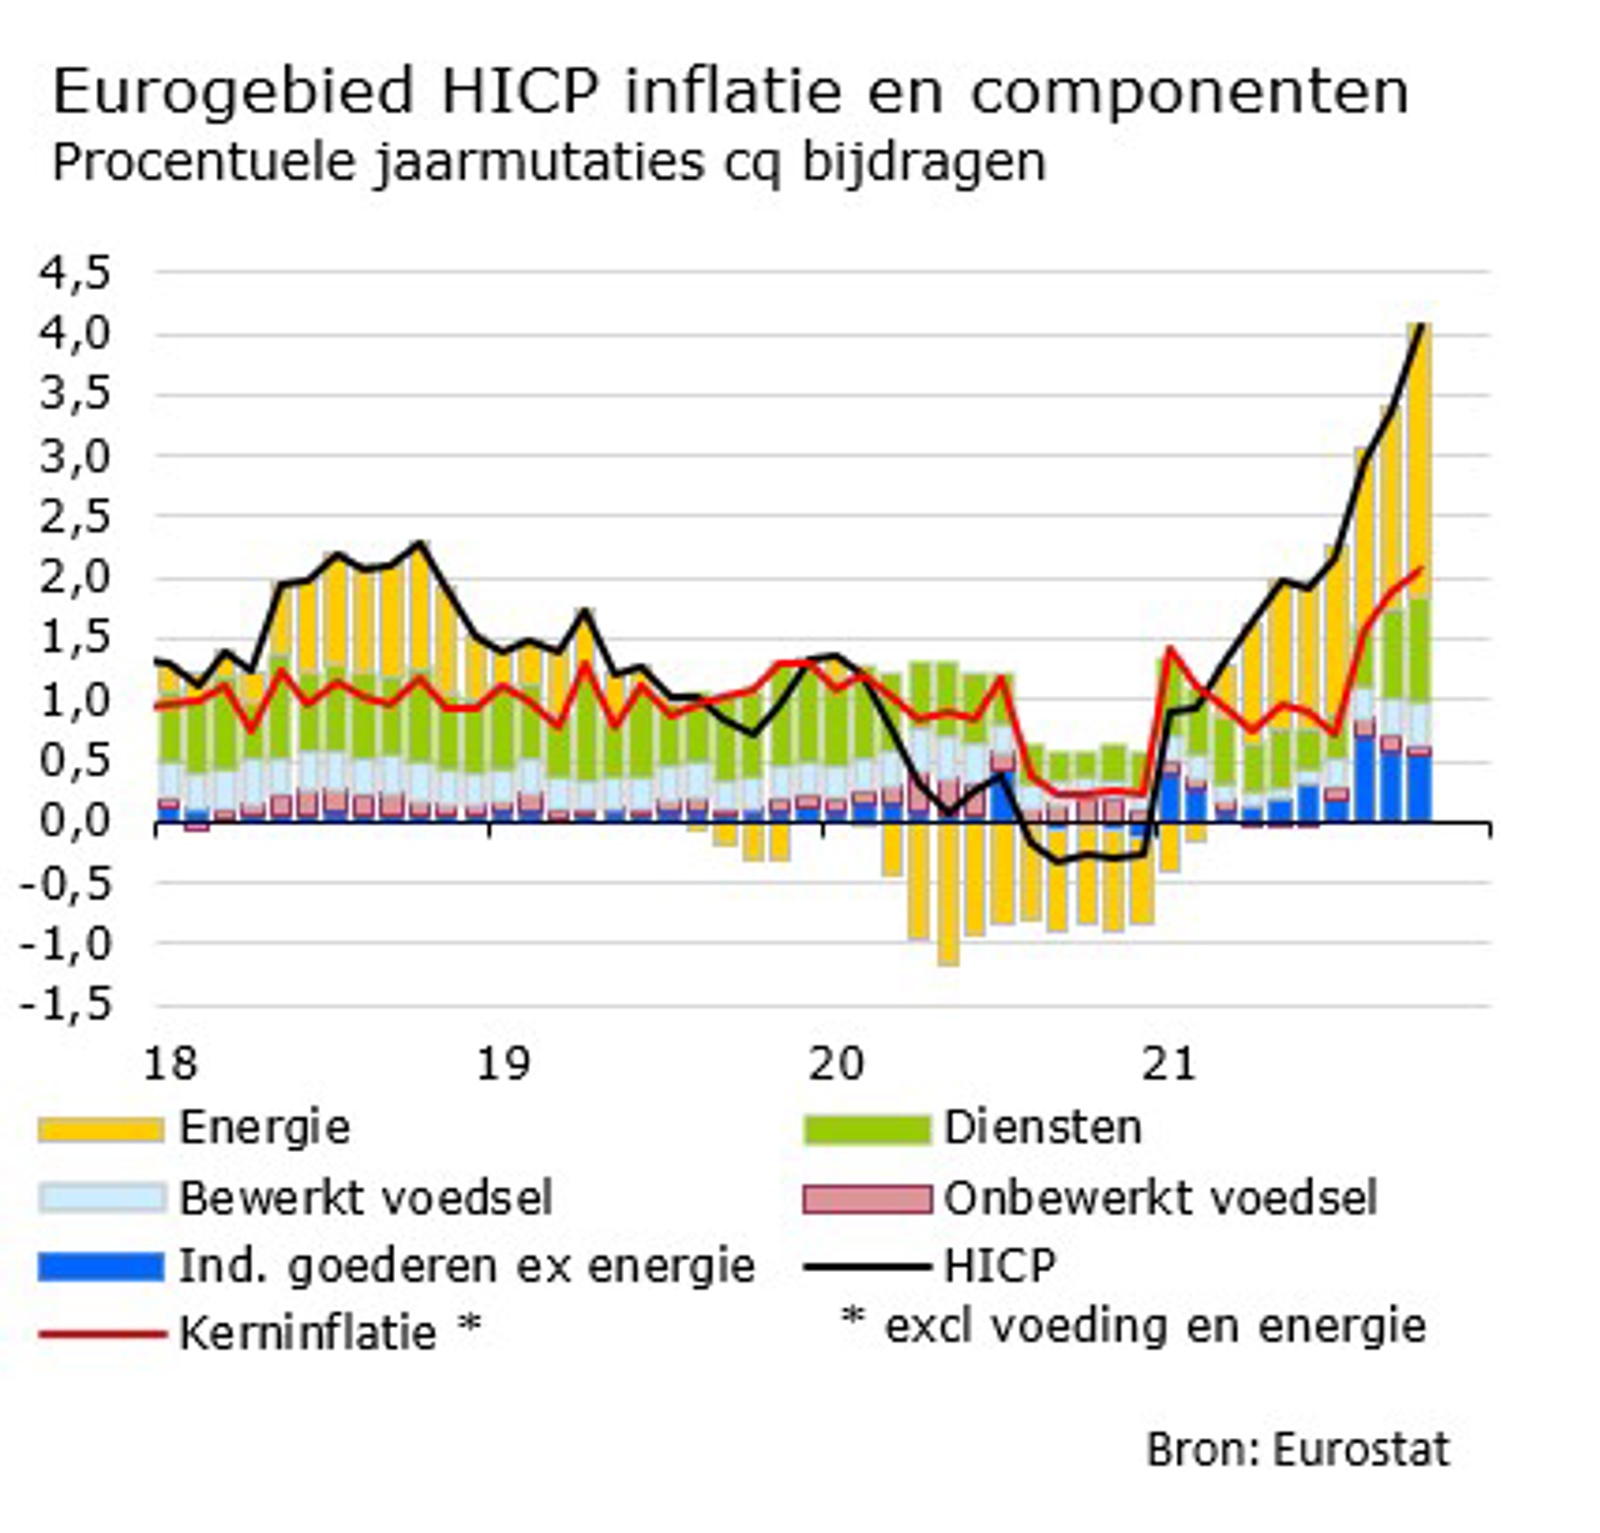 Figuur 1 Eurogebied HICP inflatie en componenten